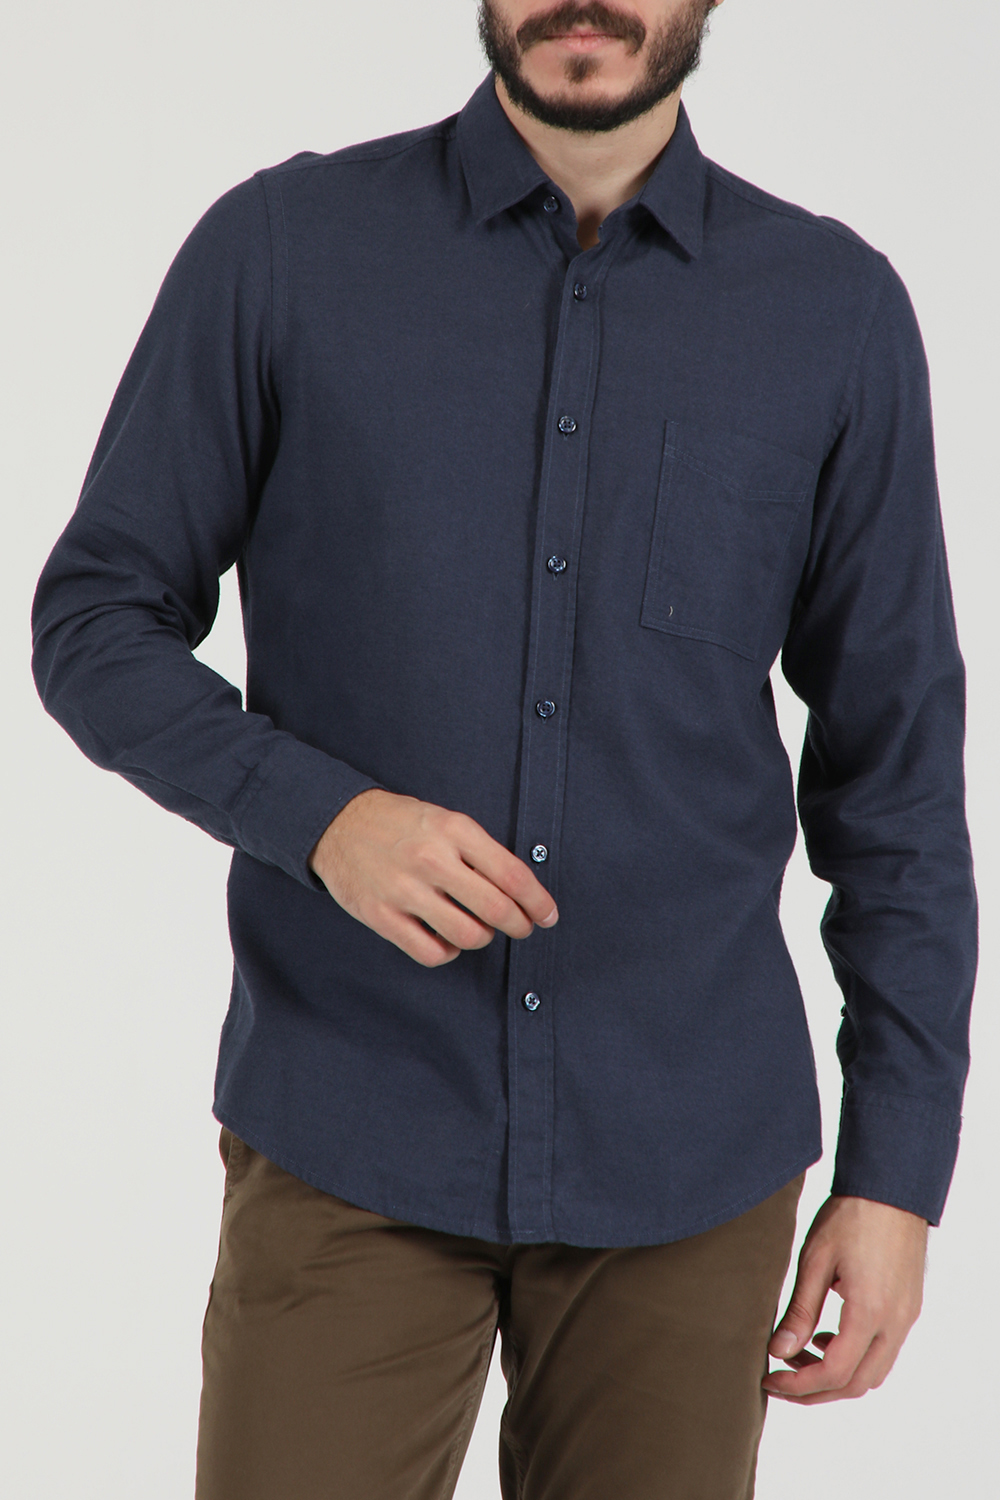 Ανδρικά/Ρούχα/Πουκάμισα/Μακρυμάνικα BOSS - Ανδρικό βαμβακερό πουκάμισο BOSS Relegant μπλε